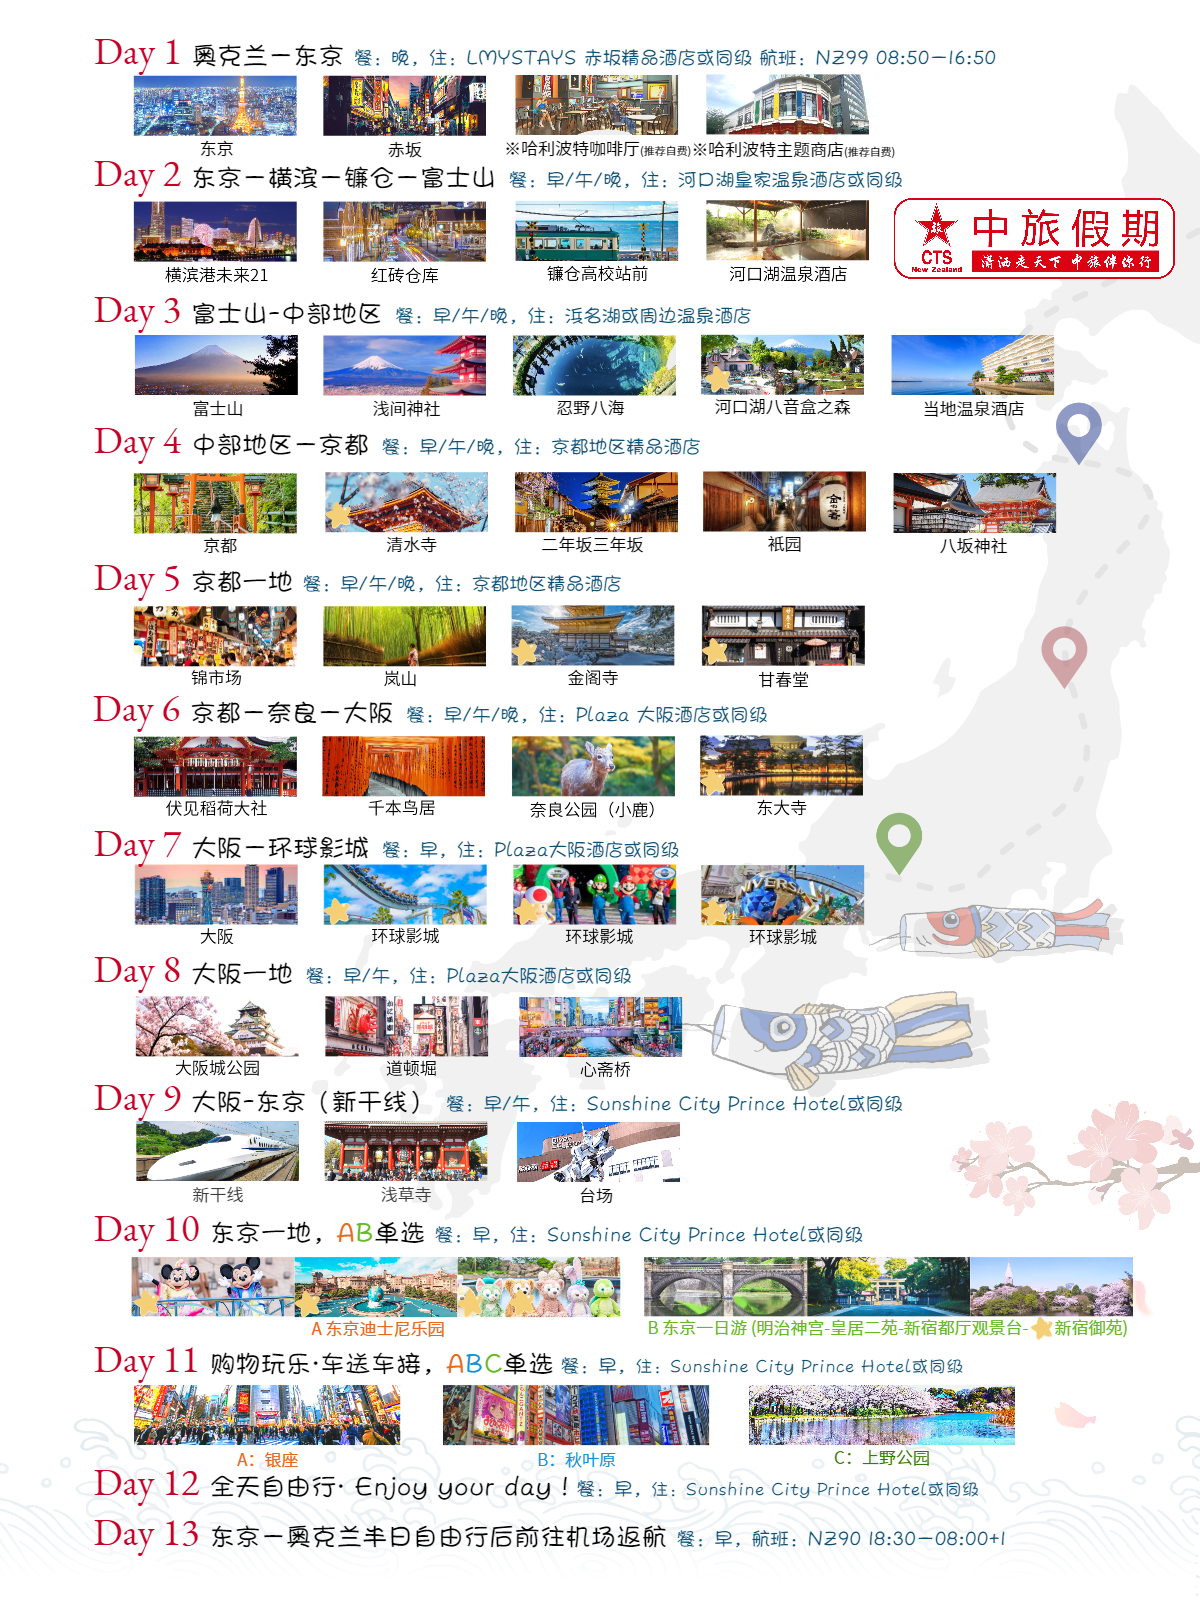 5月日本13天旅游线路 - 小红书版_2.png